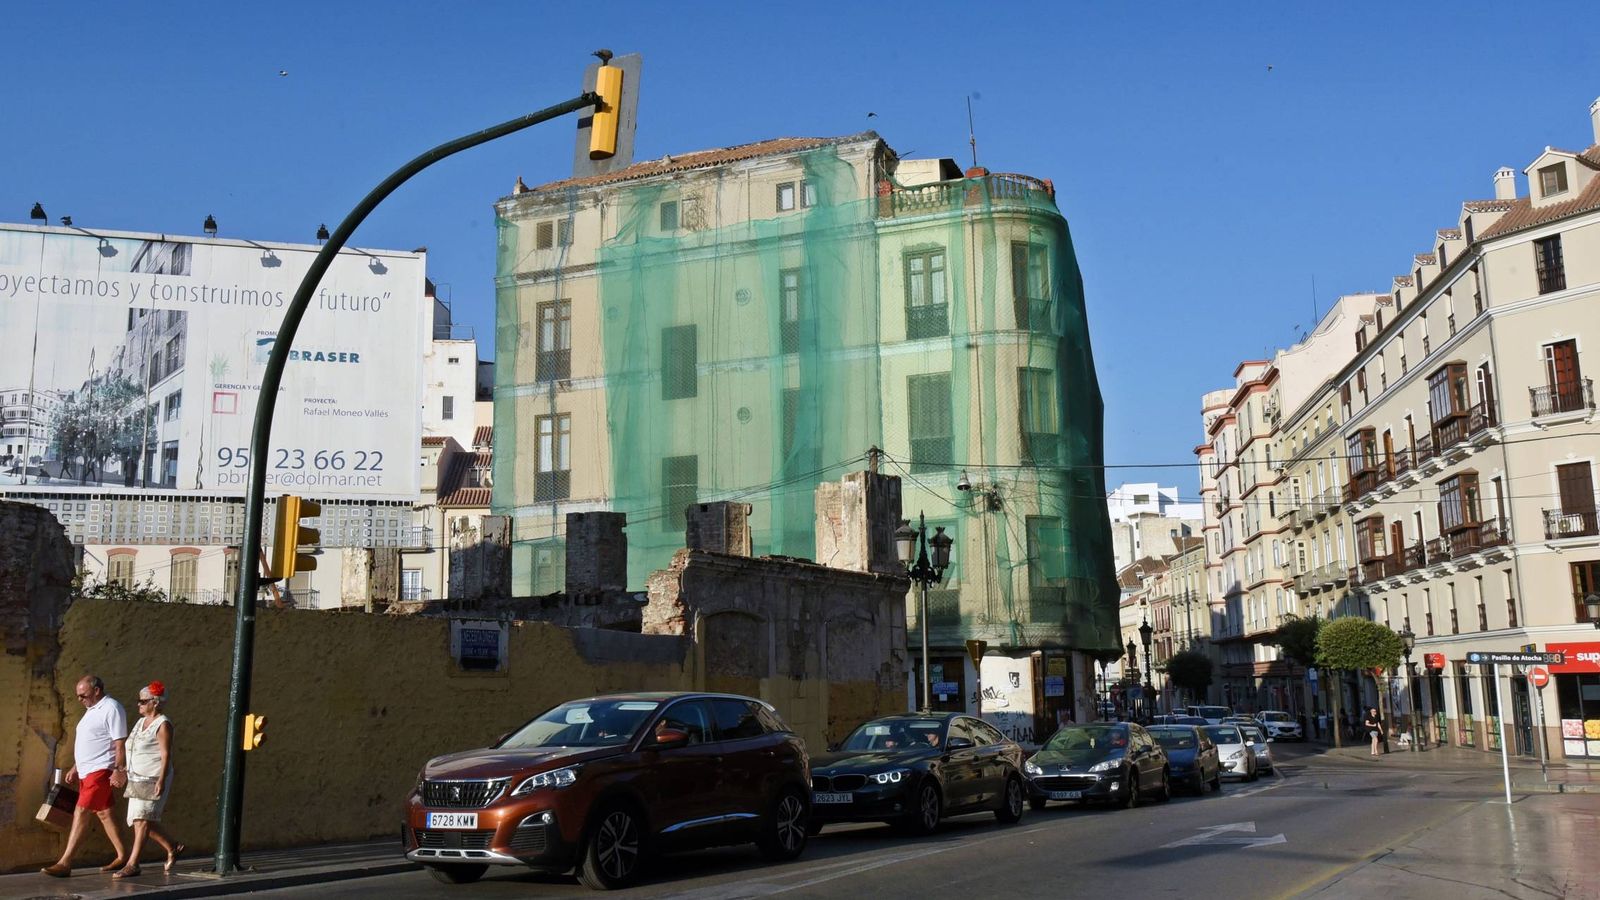 Foto: Una vista del edificio de La Mundial. A la izquierda, el cartel que anuncia el hotel de Rafael Moneo (Toñi Guerrero).